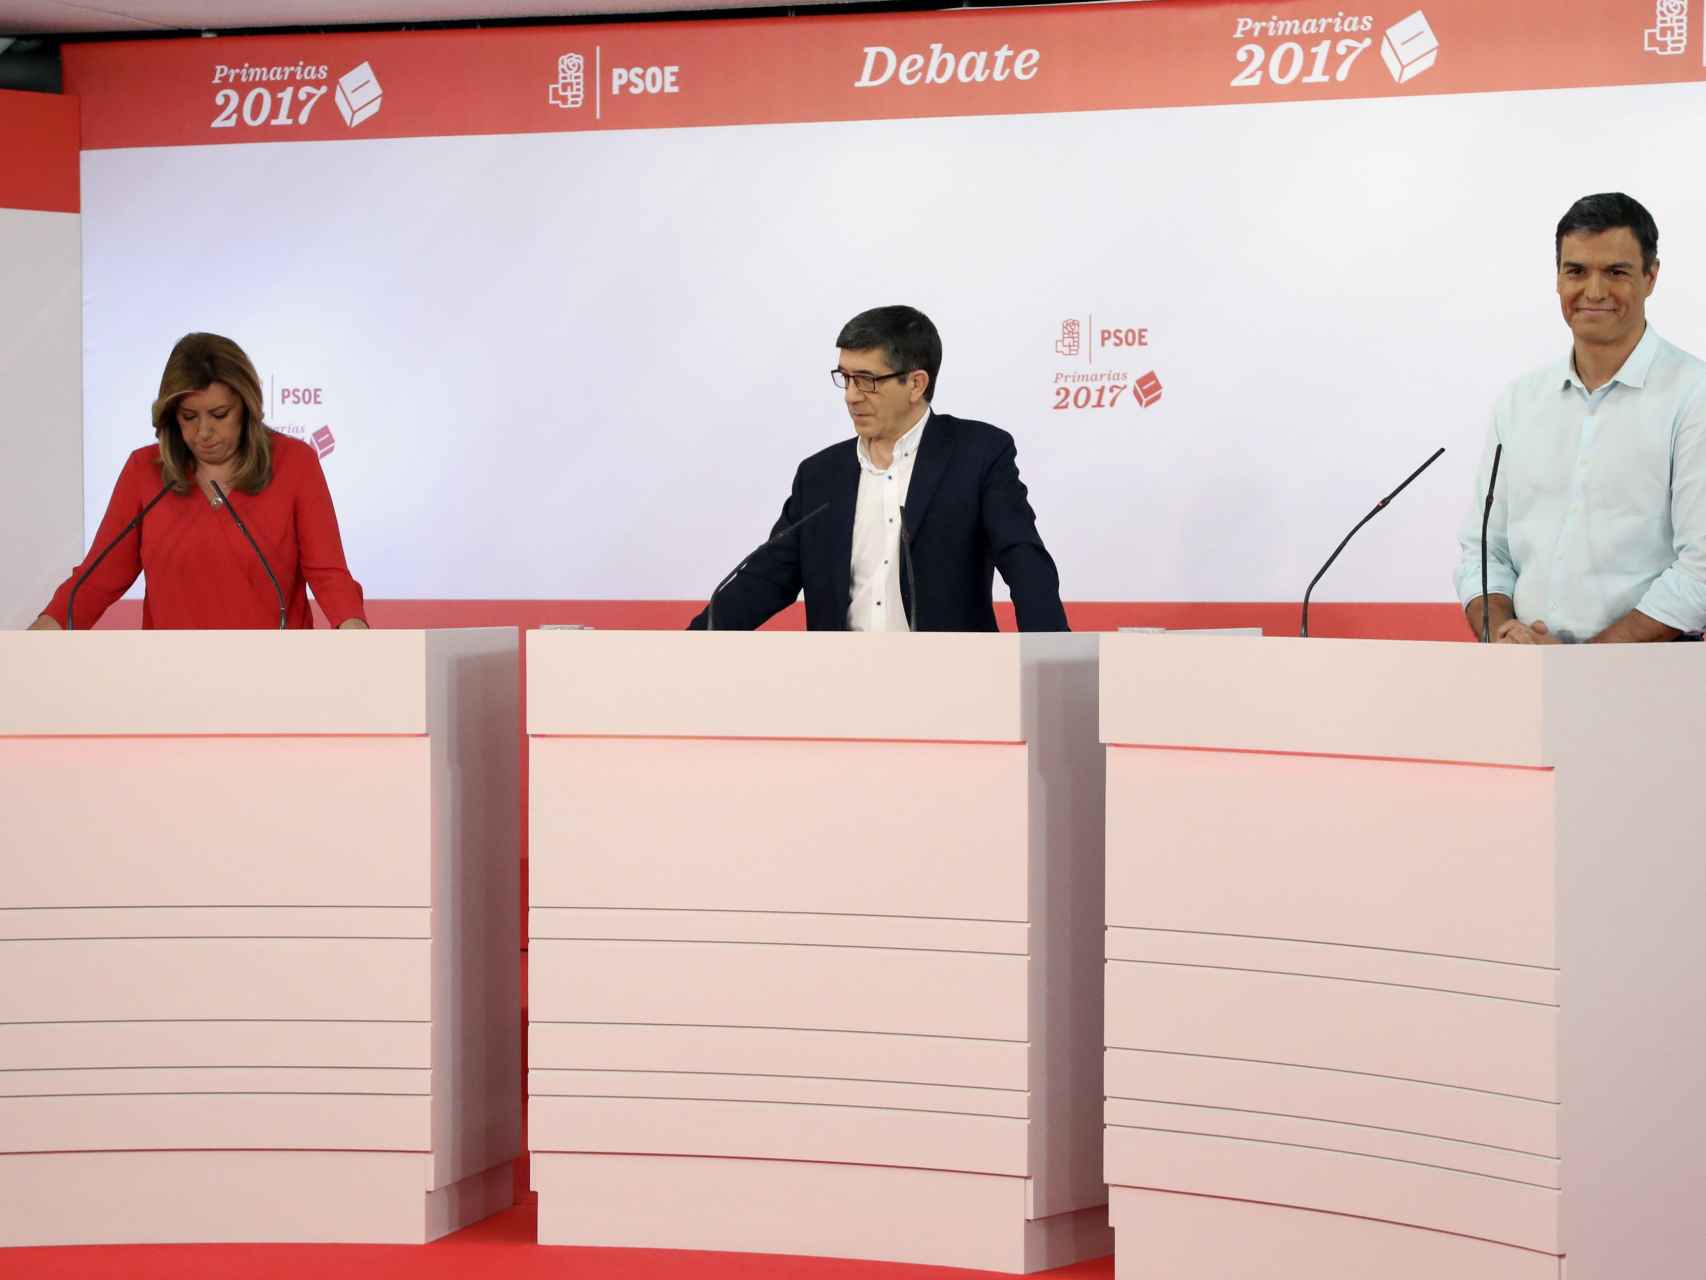 Díaz, López y Sánchez en un momento del debate.